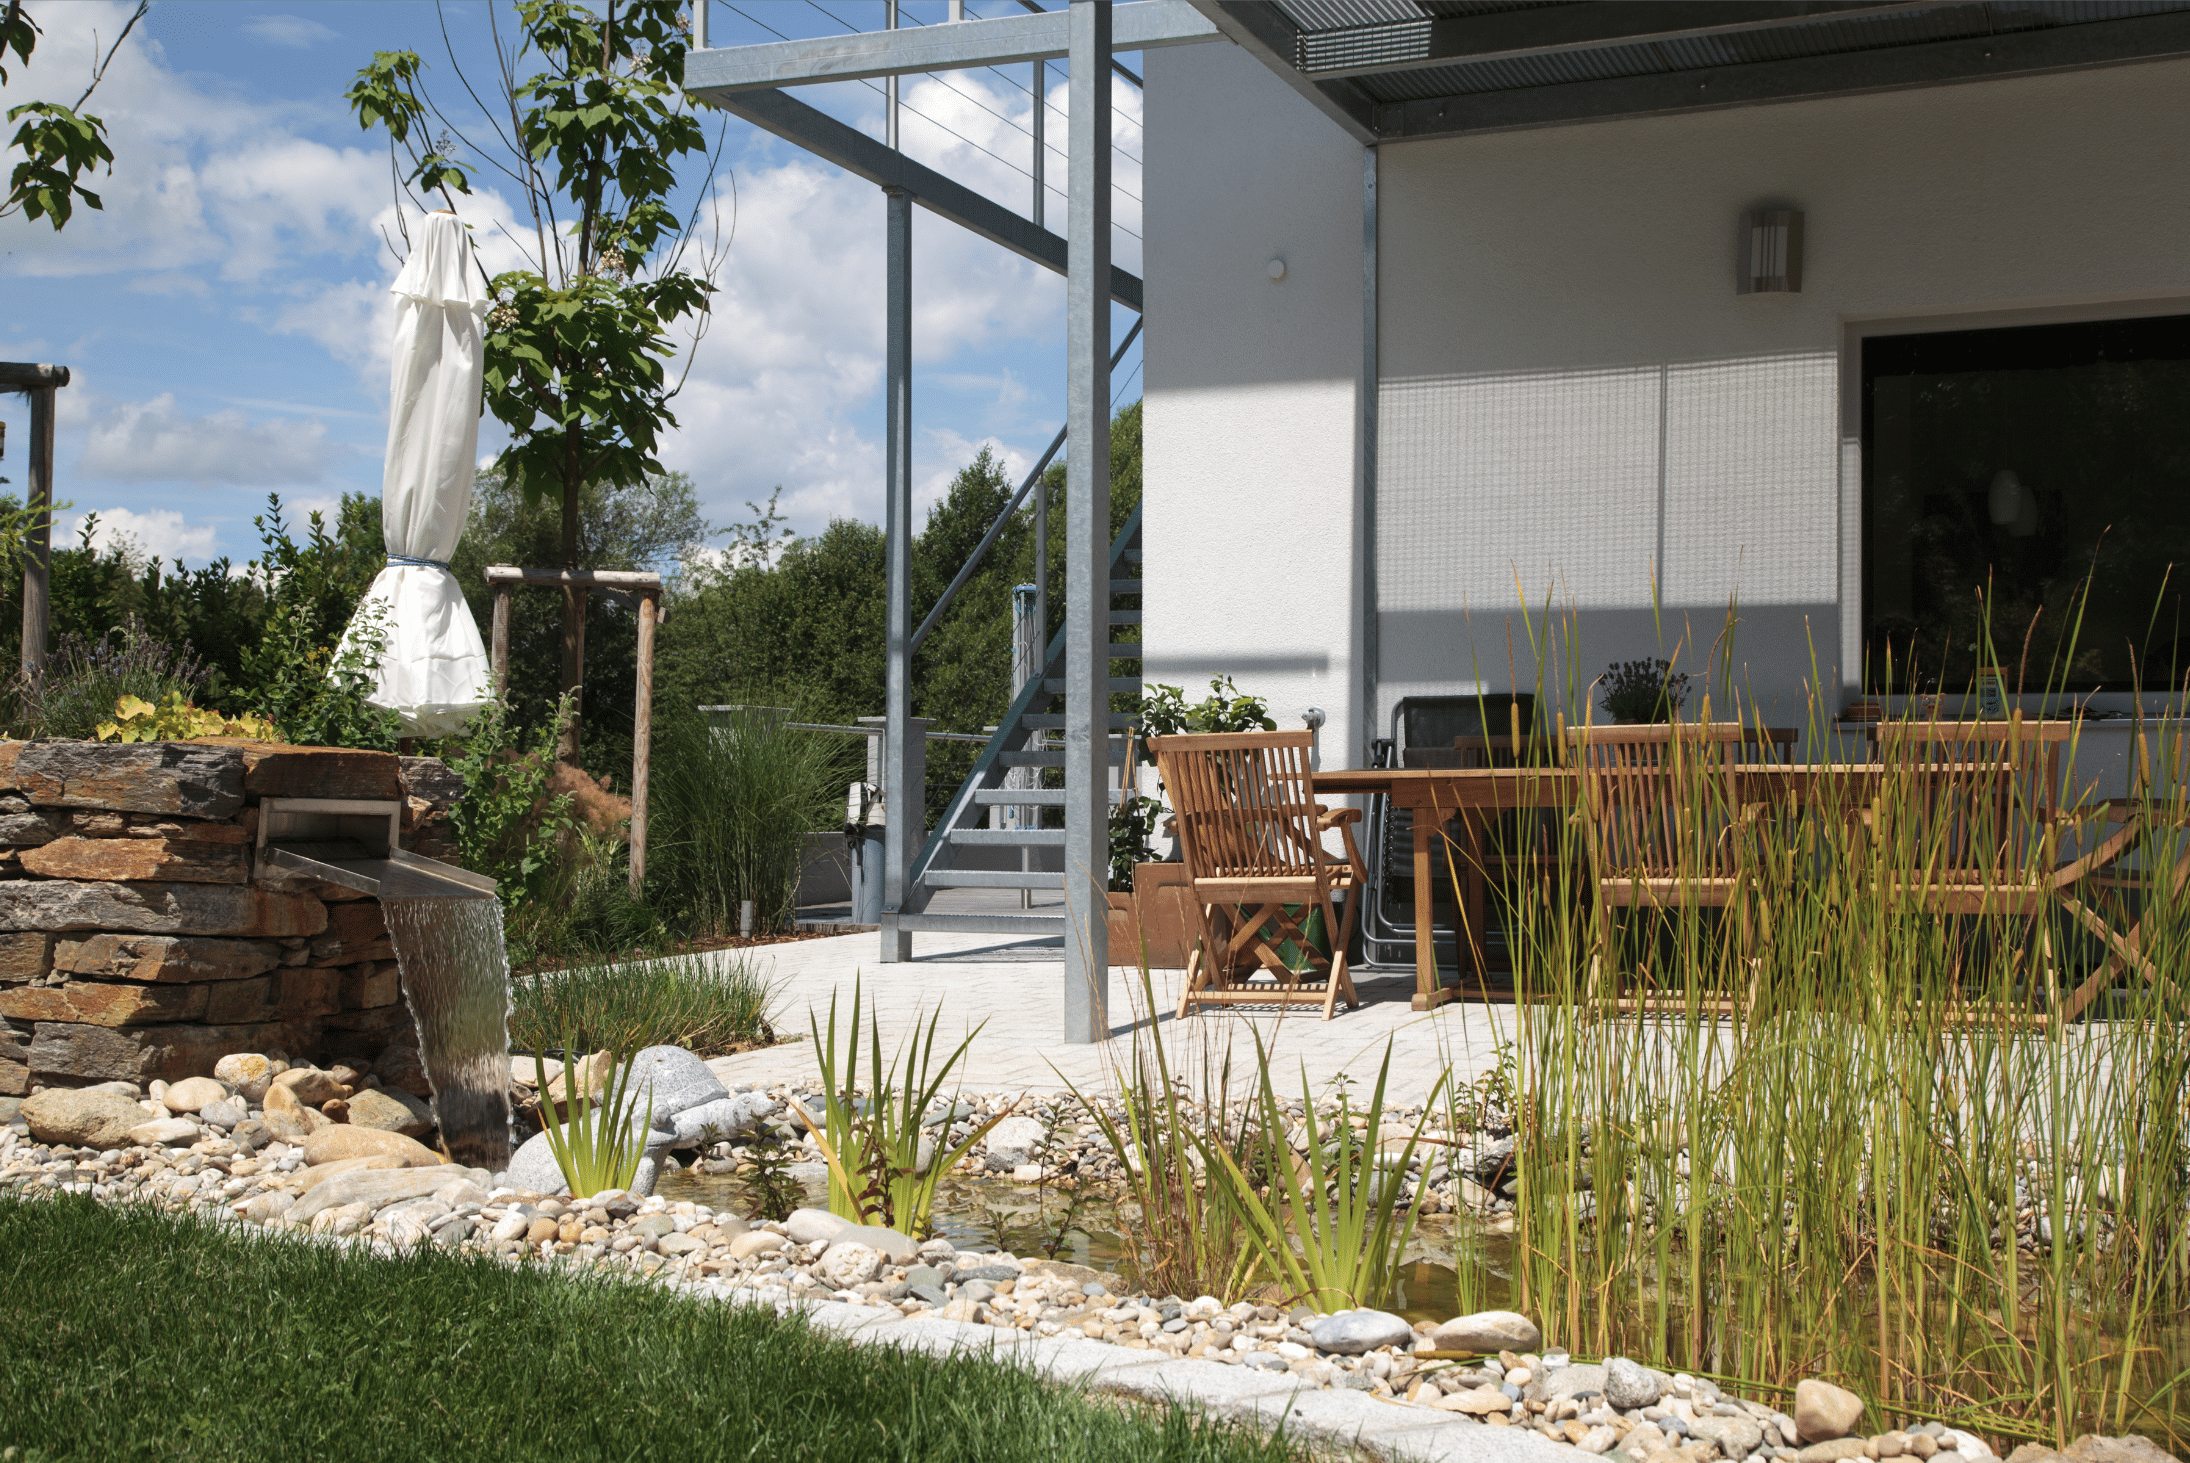 Hablesreiter zeigt eine überdachte Terrasse mit Gartenmöbel, einem kleinen Teich davor und ein integriertes Wasserspiel.